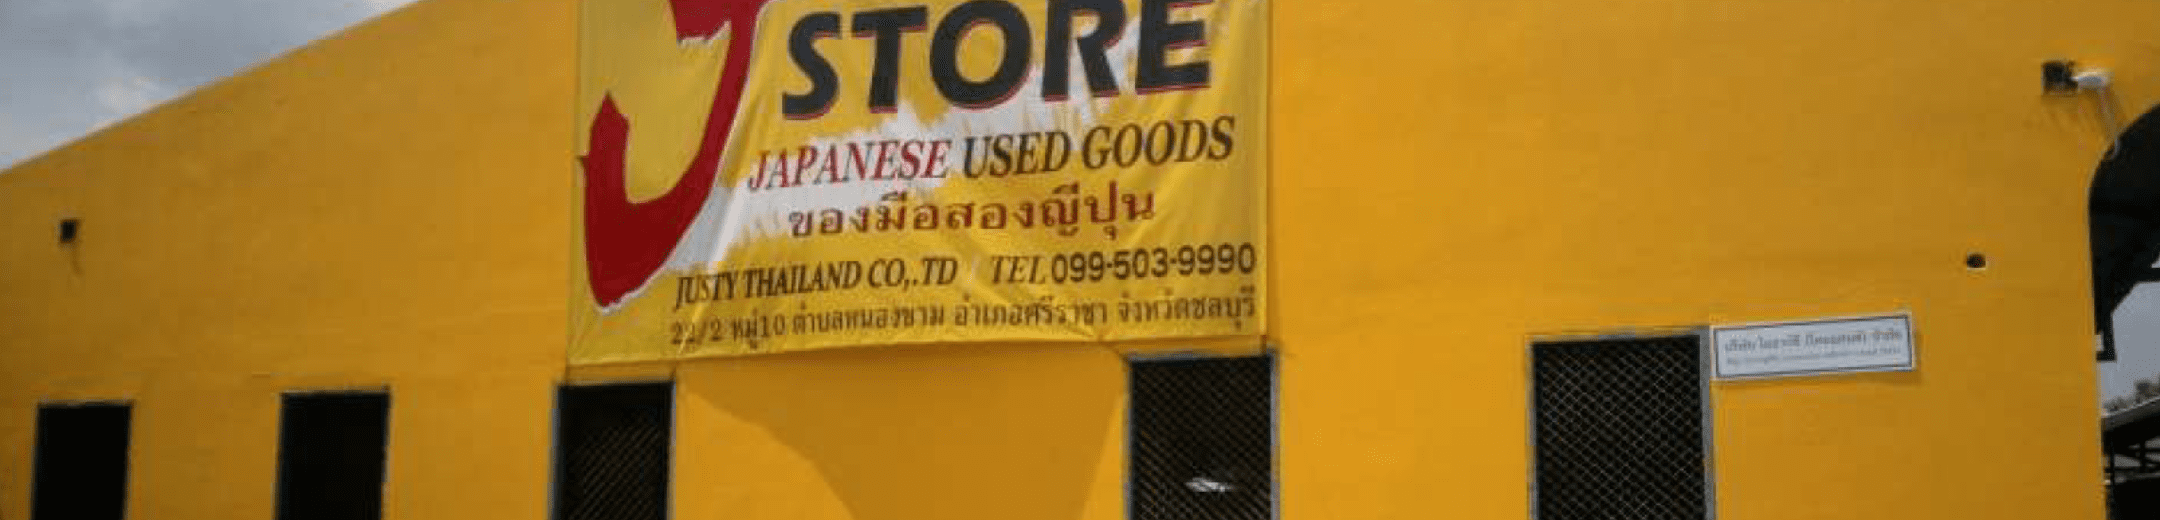 タイ販売店事業